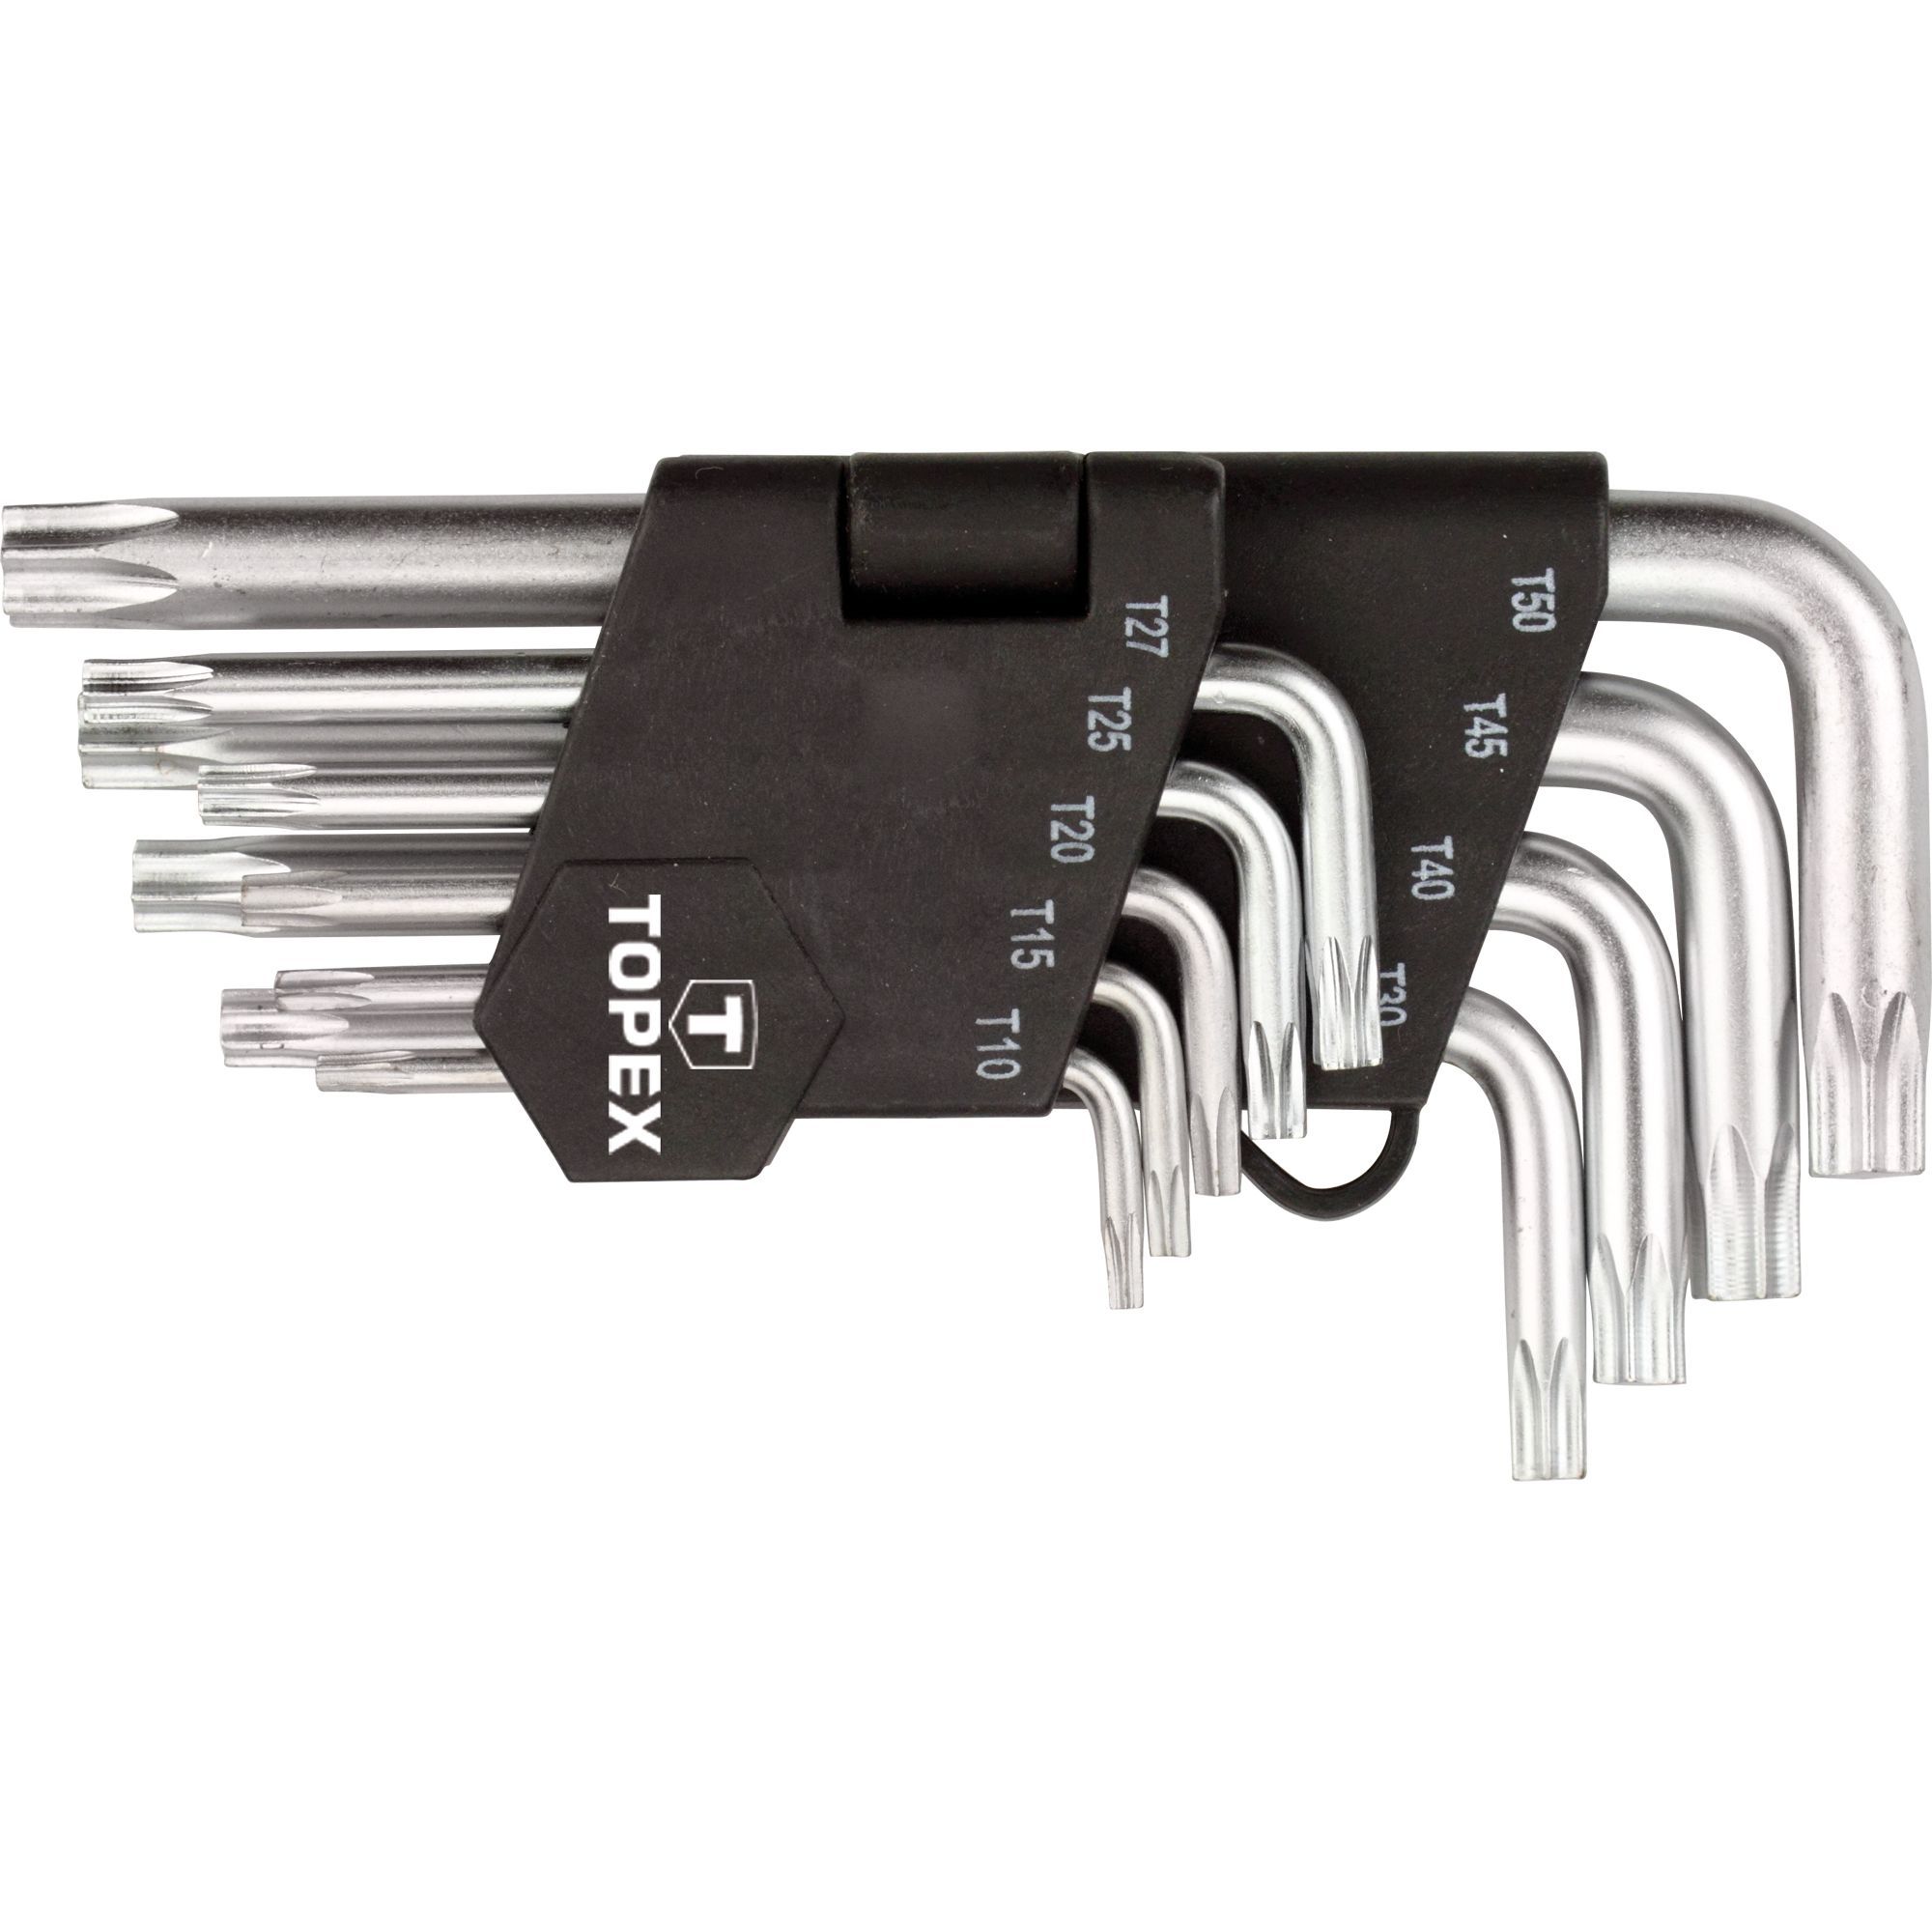 Ключи Topex Torx 9 шт. (35D960) - фото 1